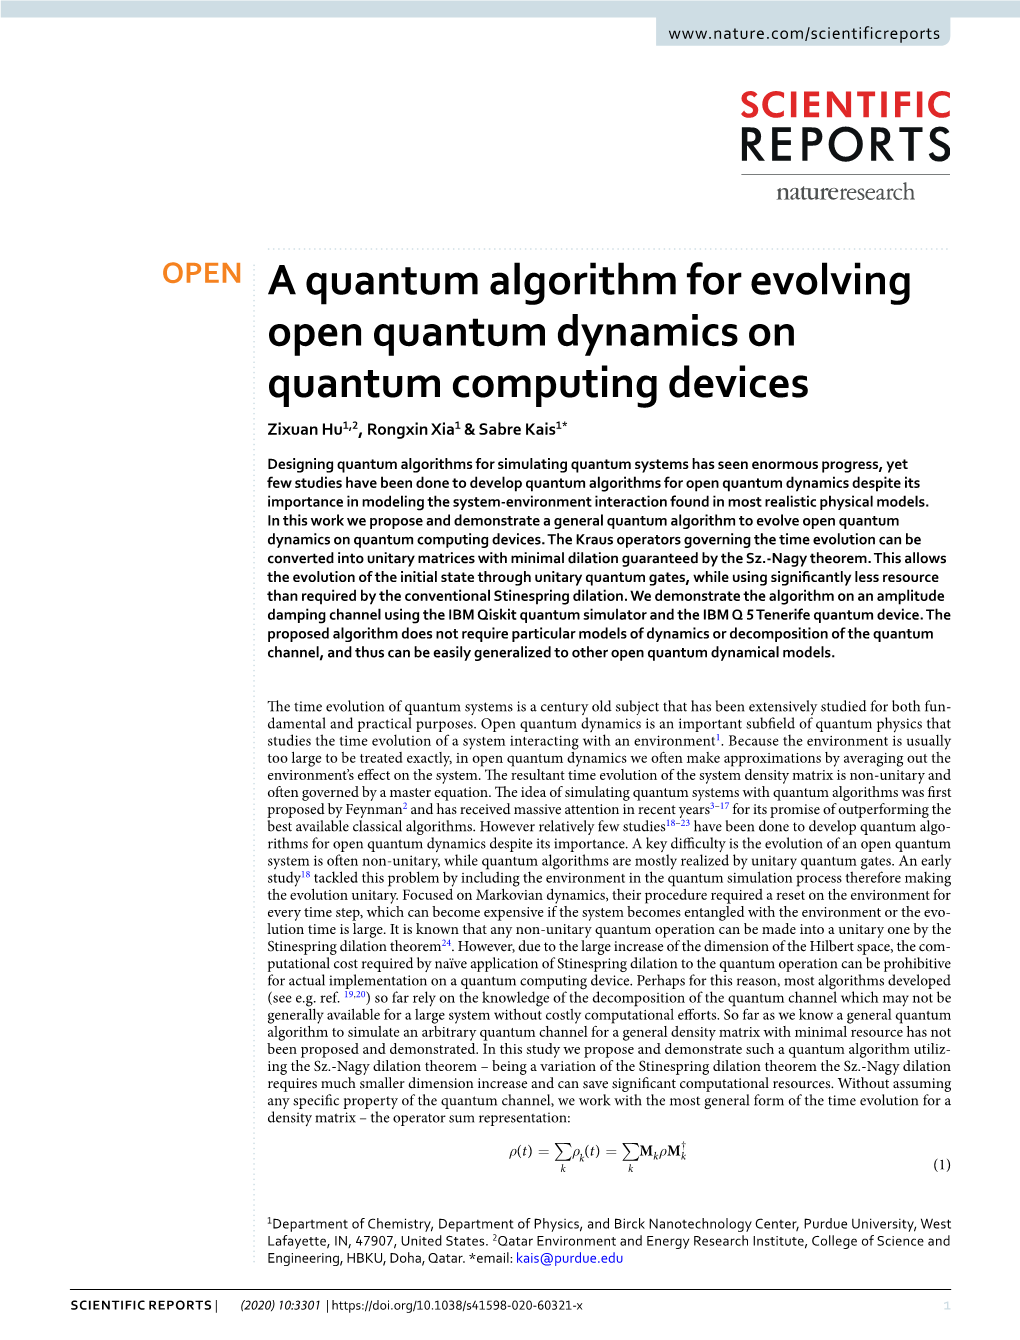 A Quantum Algorithm for Evolving Open Quantum Dynamics on Quantum Computing Devices Zixuan Hu1,2, Rongxin Xia1 & Sabre Kais1*